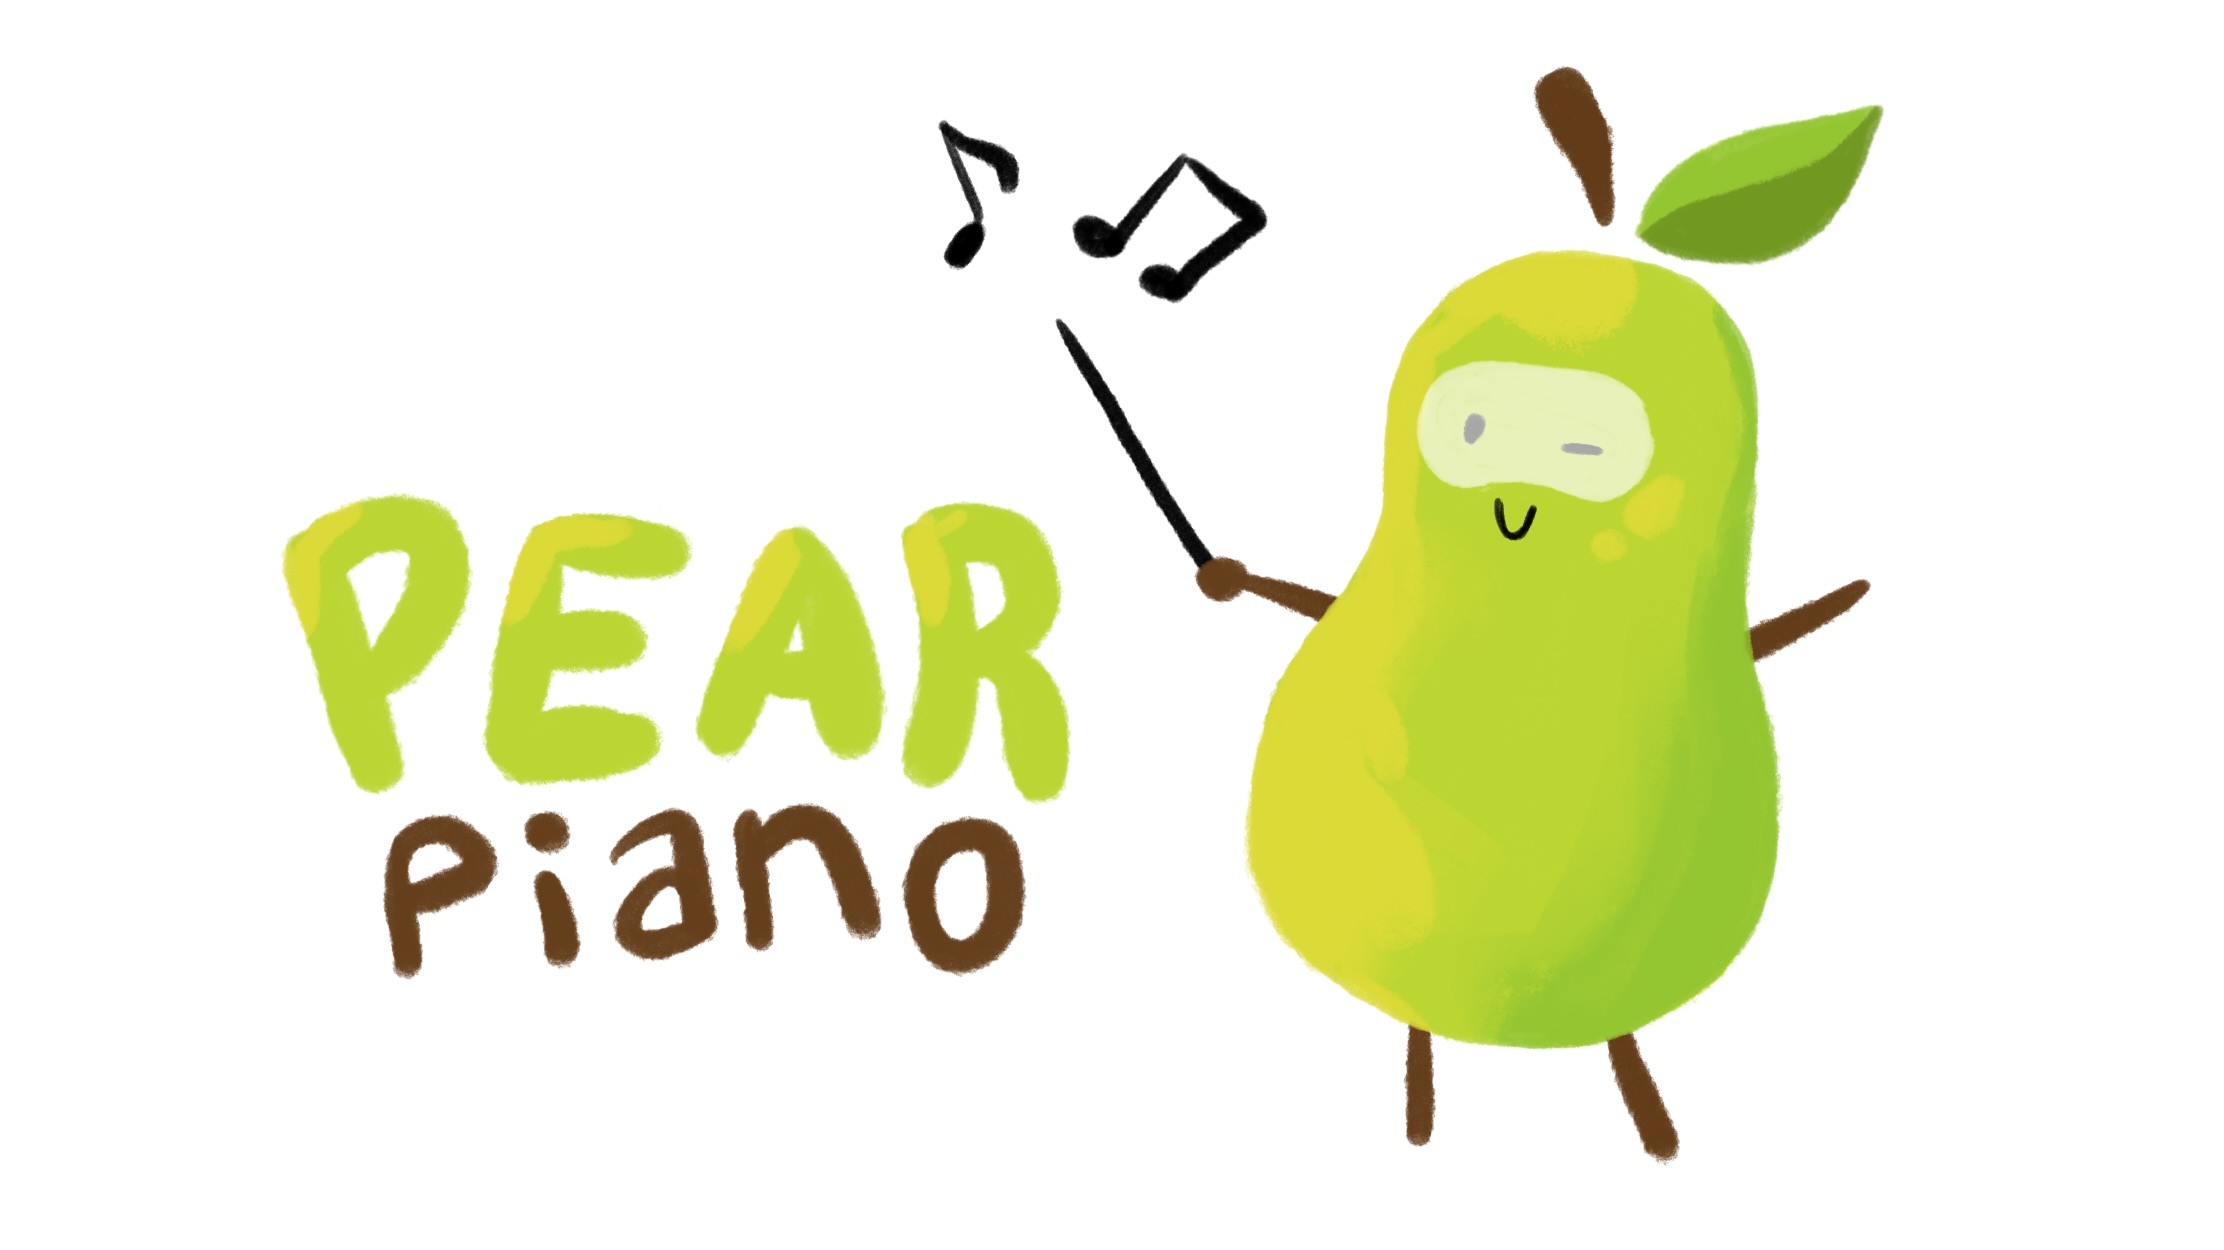 Thumbnail of Pear Piano, displaying a cute pear mascot!